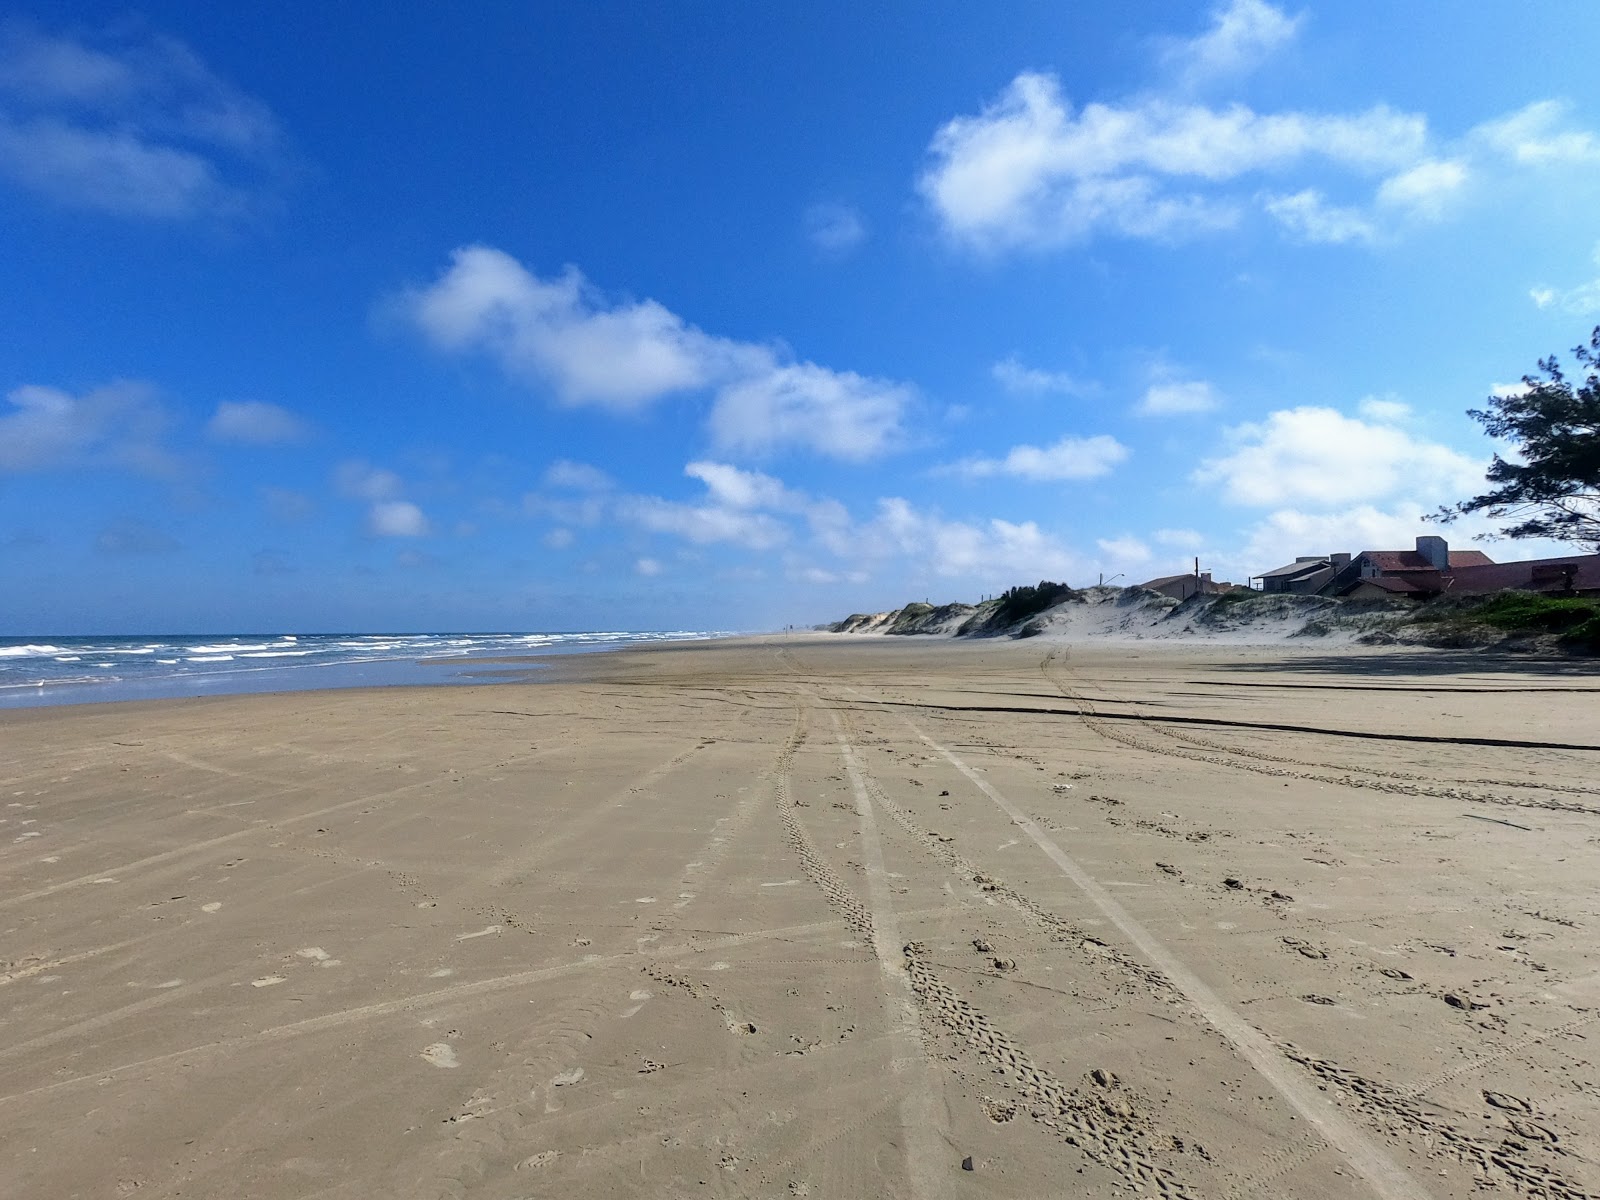 Fotografie cu Praia de Remanso cu o suprafață de nisip fin strălucitor